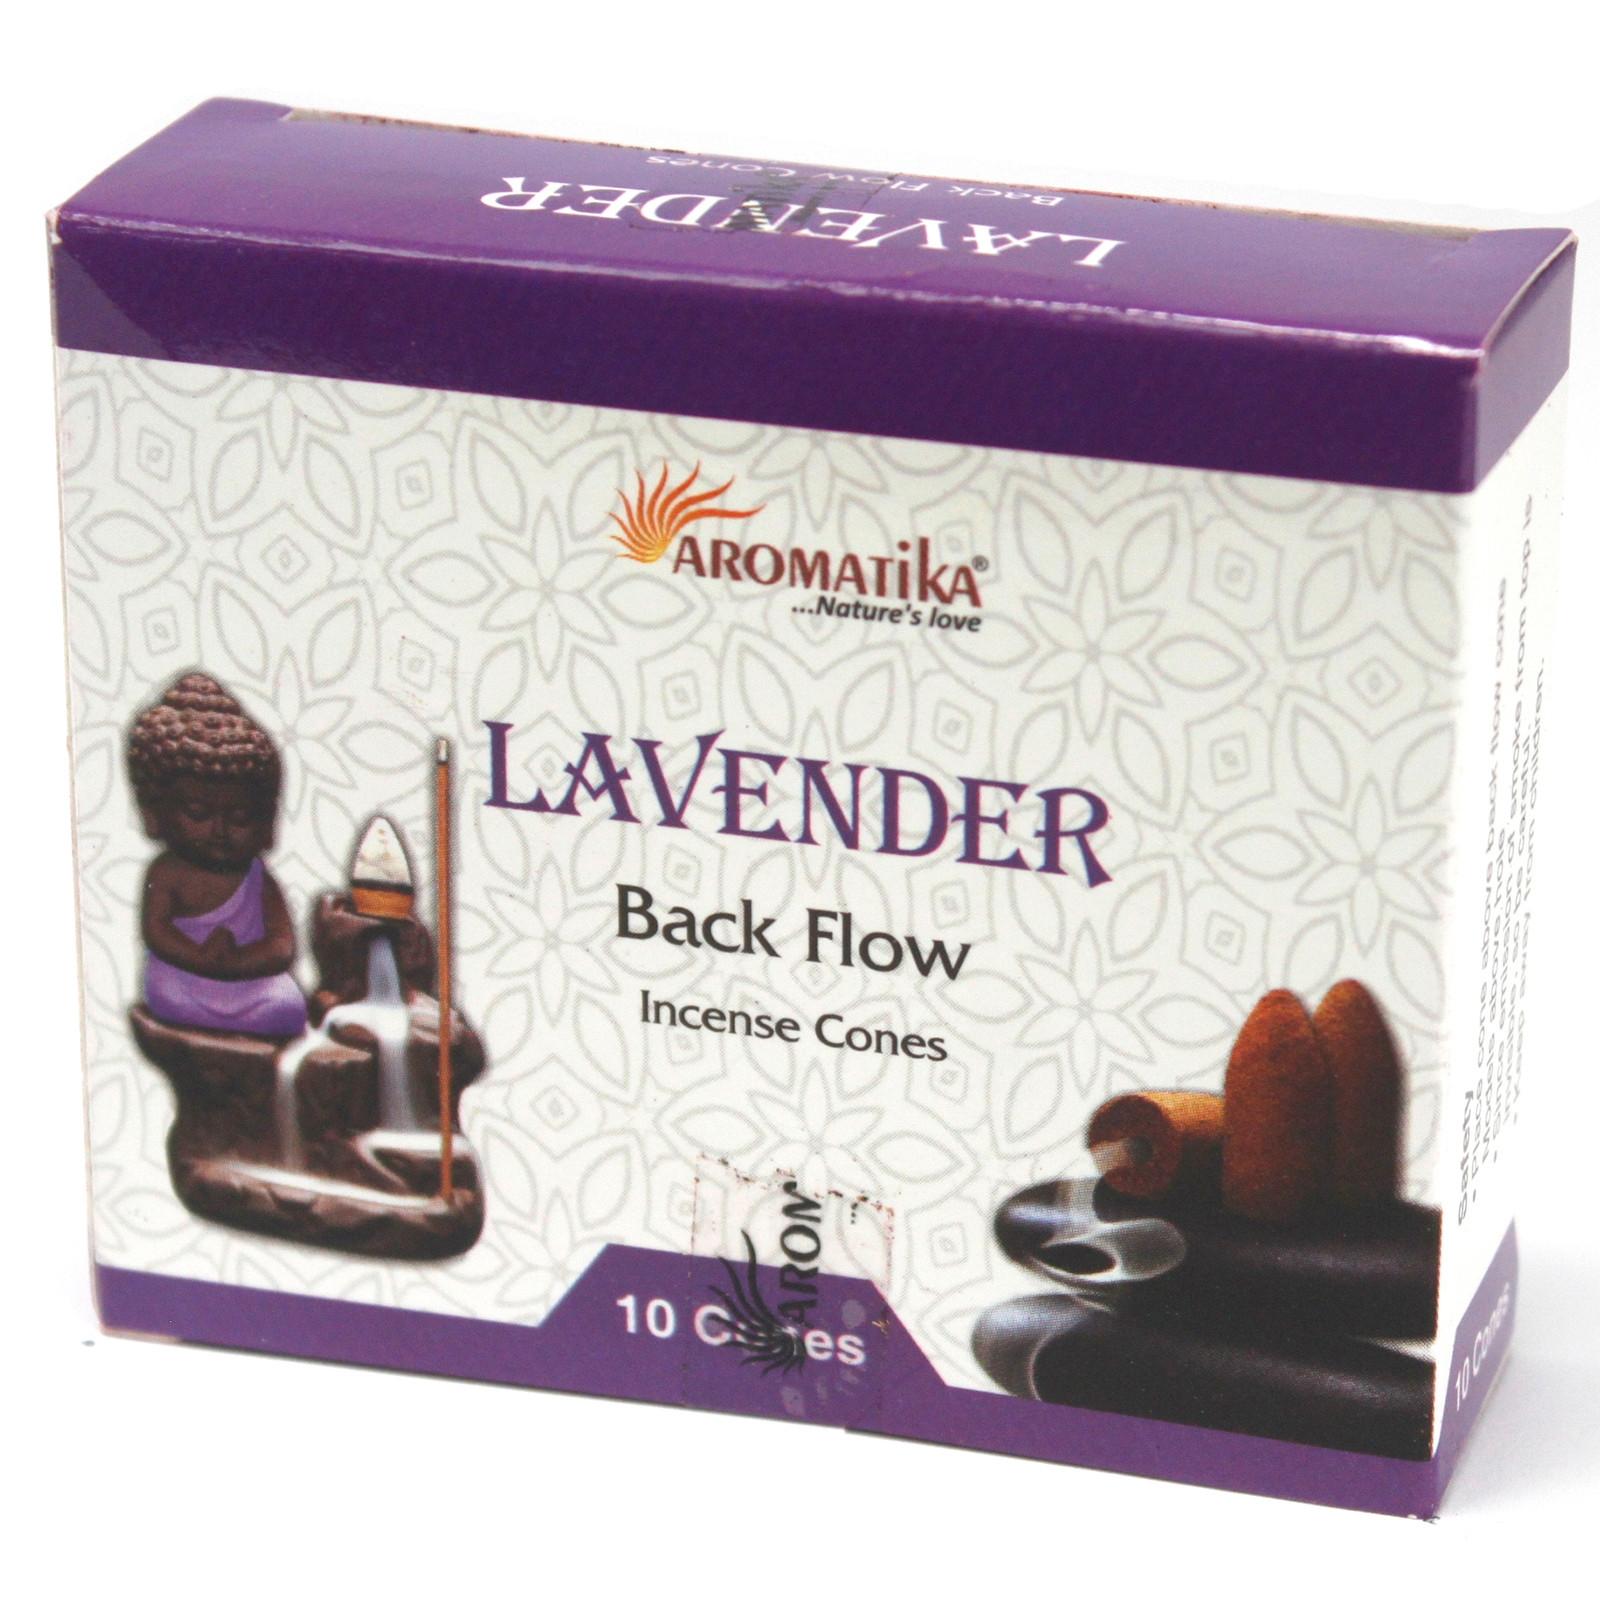 Aromatica Lavender Backflow Incense Cones